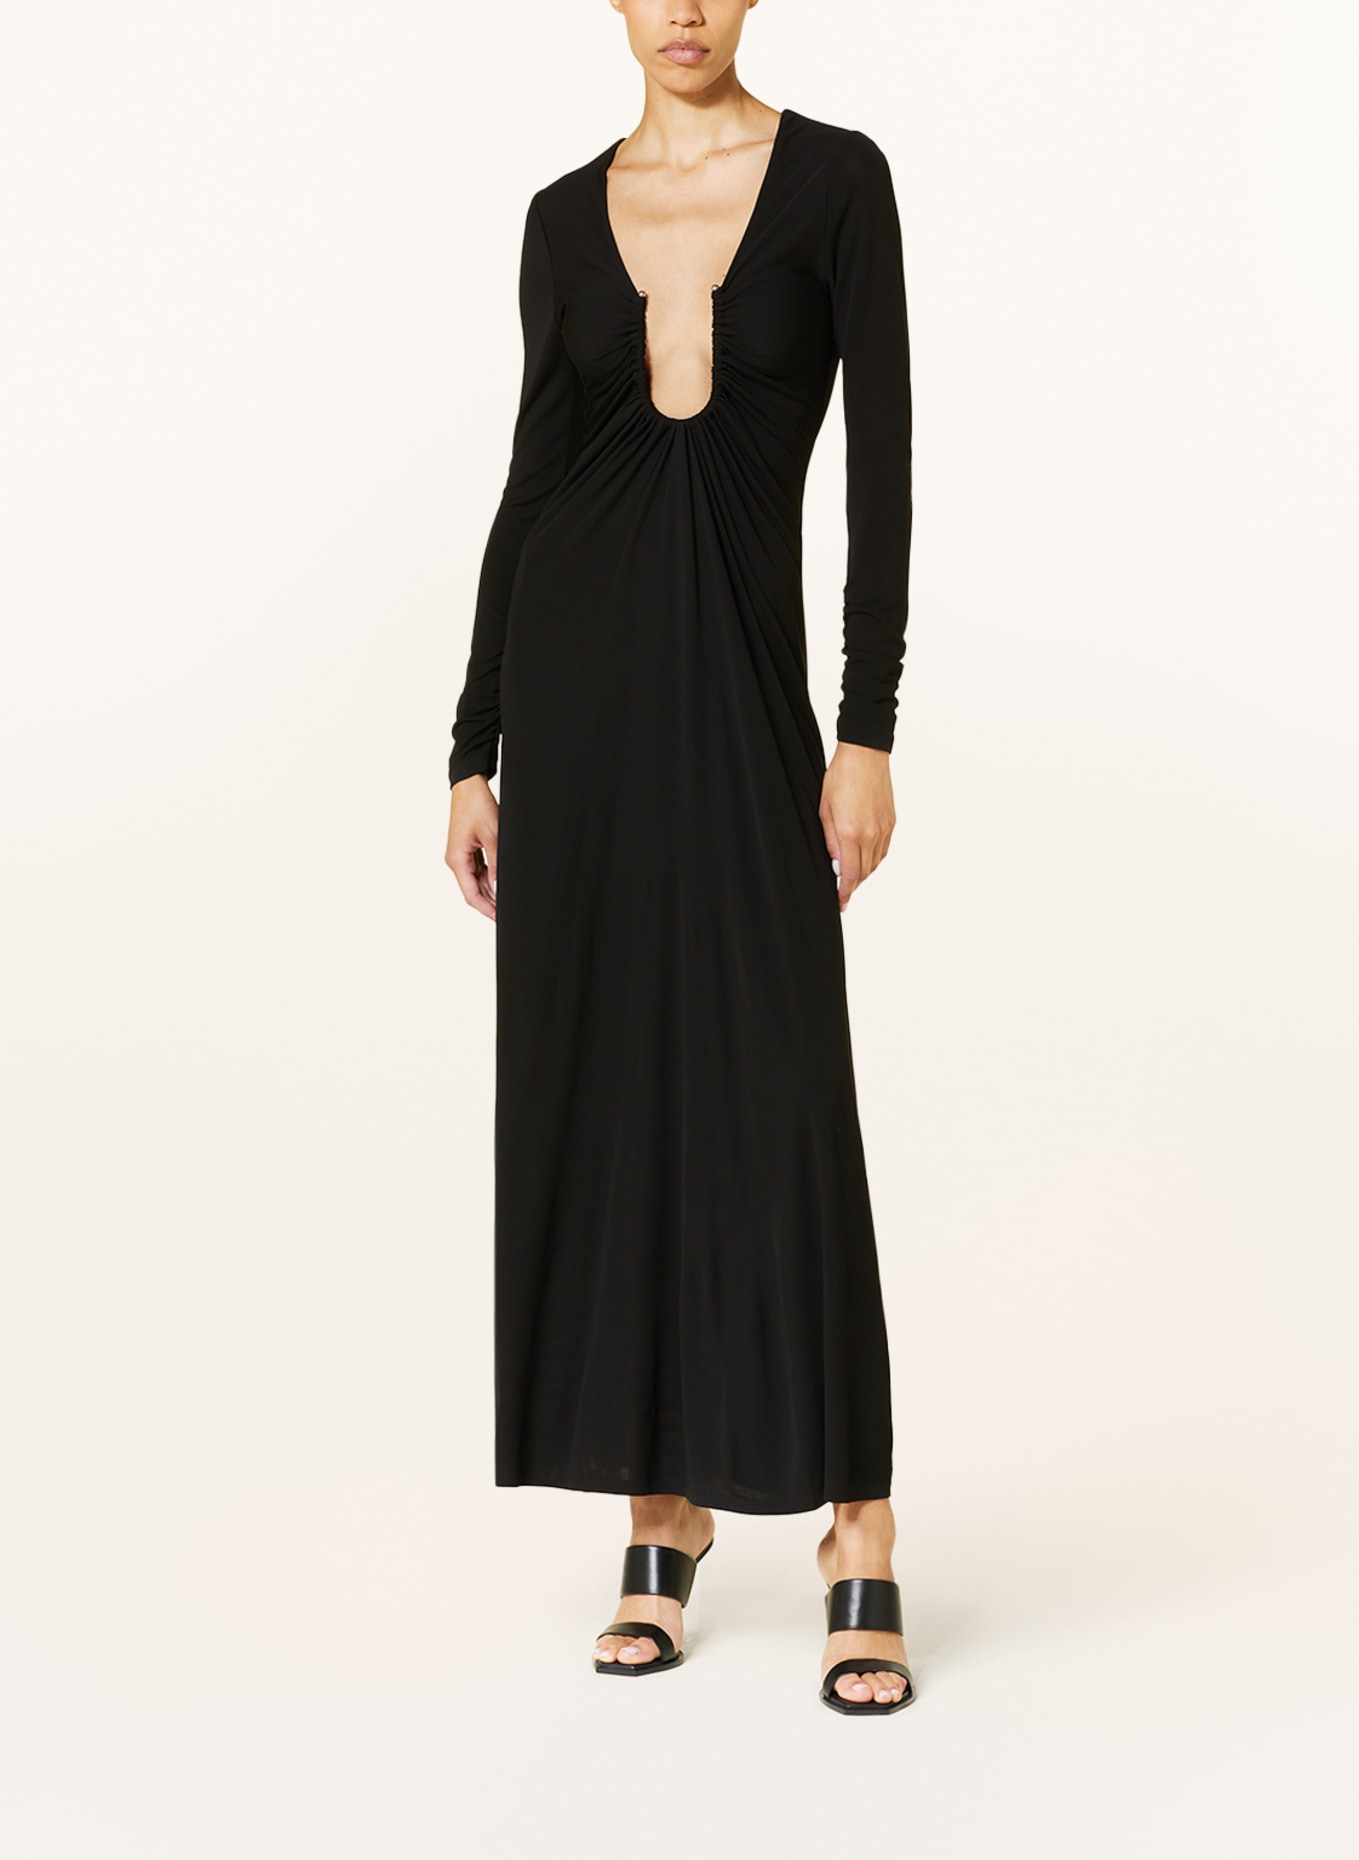 ESBER Kleid schwarz CHRISTOPHER in ARCED PALM